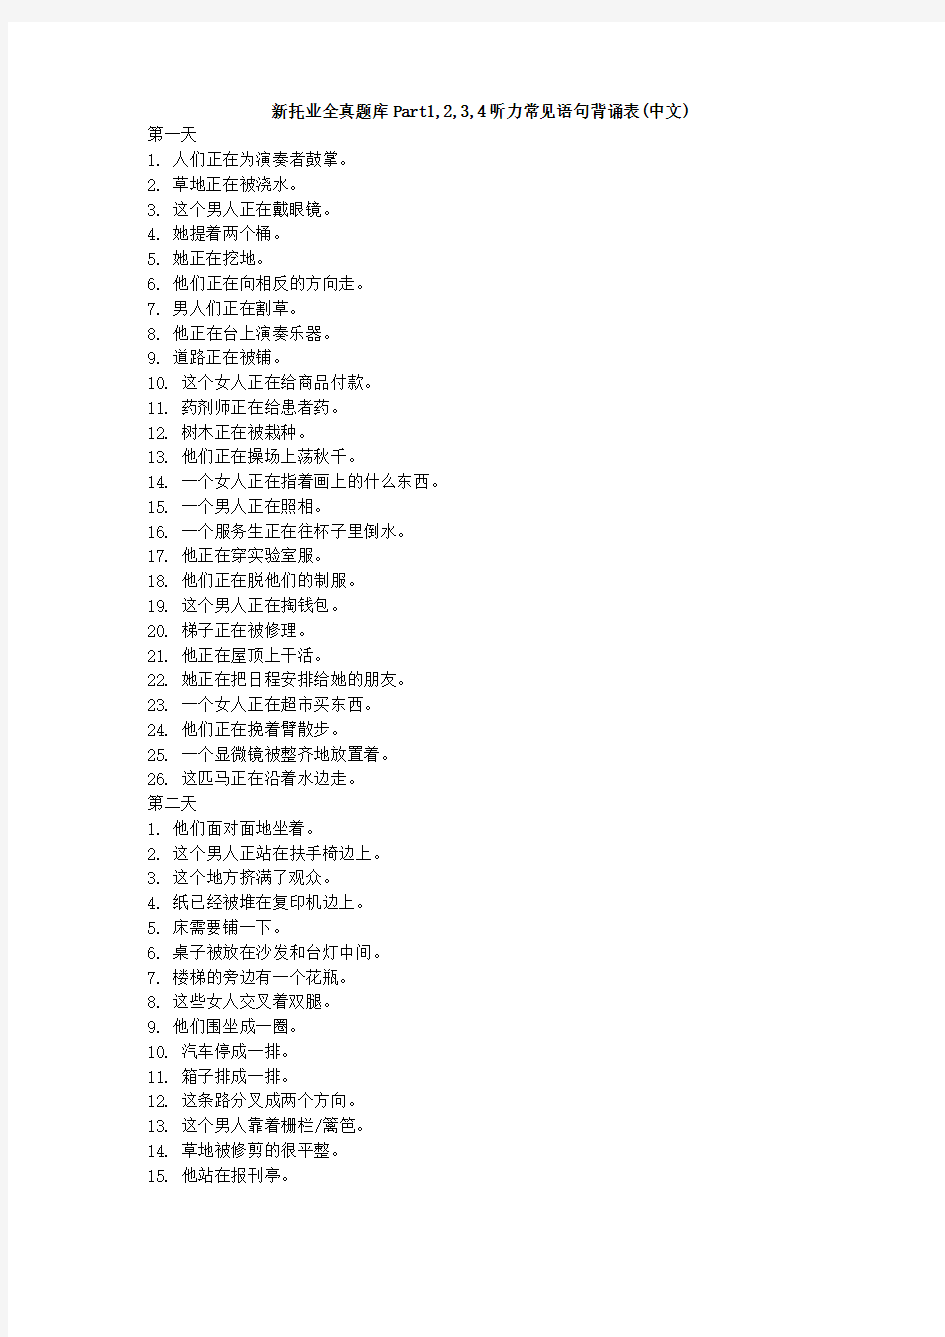 新托业全真题库Part1,2,3,4听力常见语句背诵表(中文)